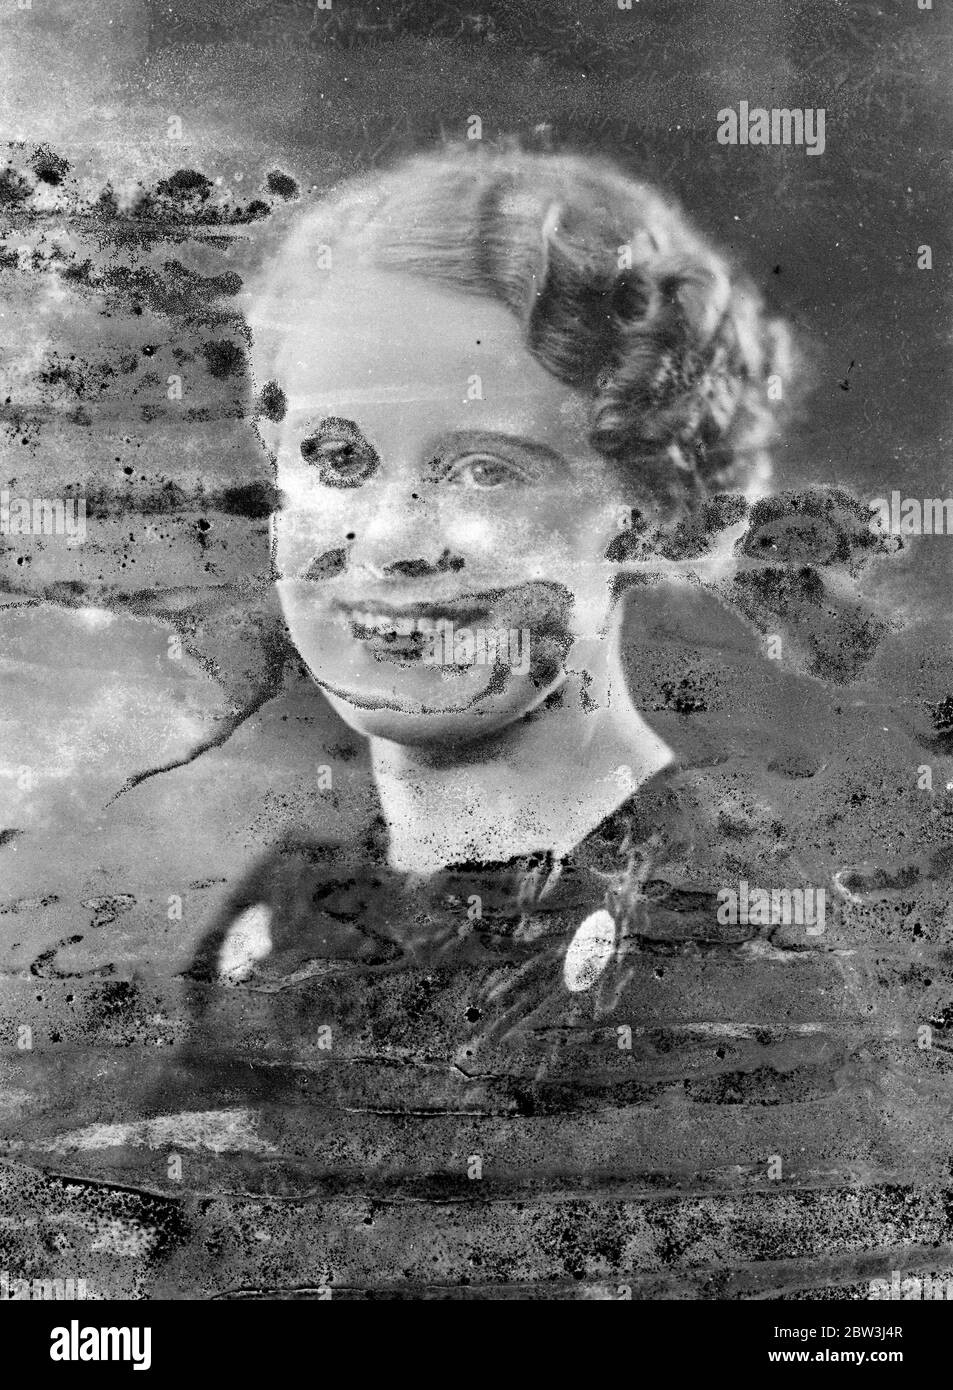 Karneval Königin von Swindon . Miss Joyce Gooding wurde zum Karneval Königin von Swindon gewählt. Sie regiert eine Woche lang über den Swindon Charity Karneval. Foto zeigt, Miss Joyce Gooding, Karneval Königin in Swindon. 17 Juni 1936 Stockfoto